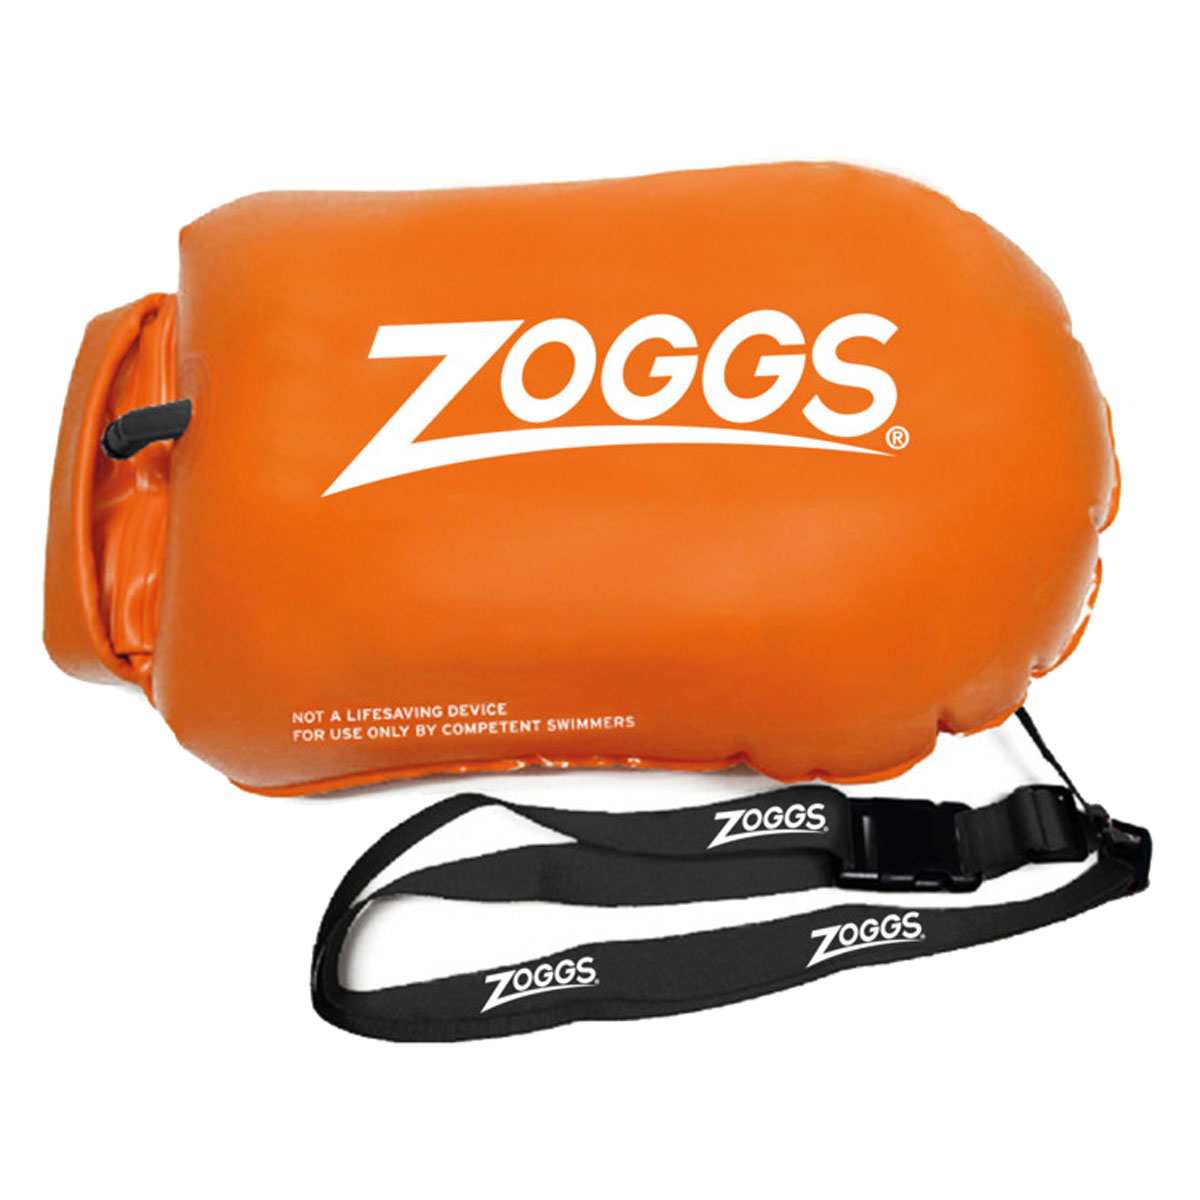 Zoggs Hi-Viz Boya de Seguridad para Natación 12L Naranja